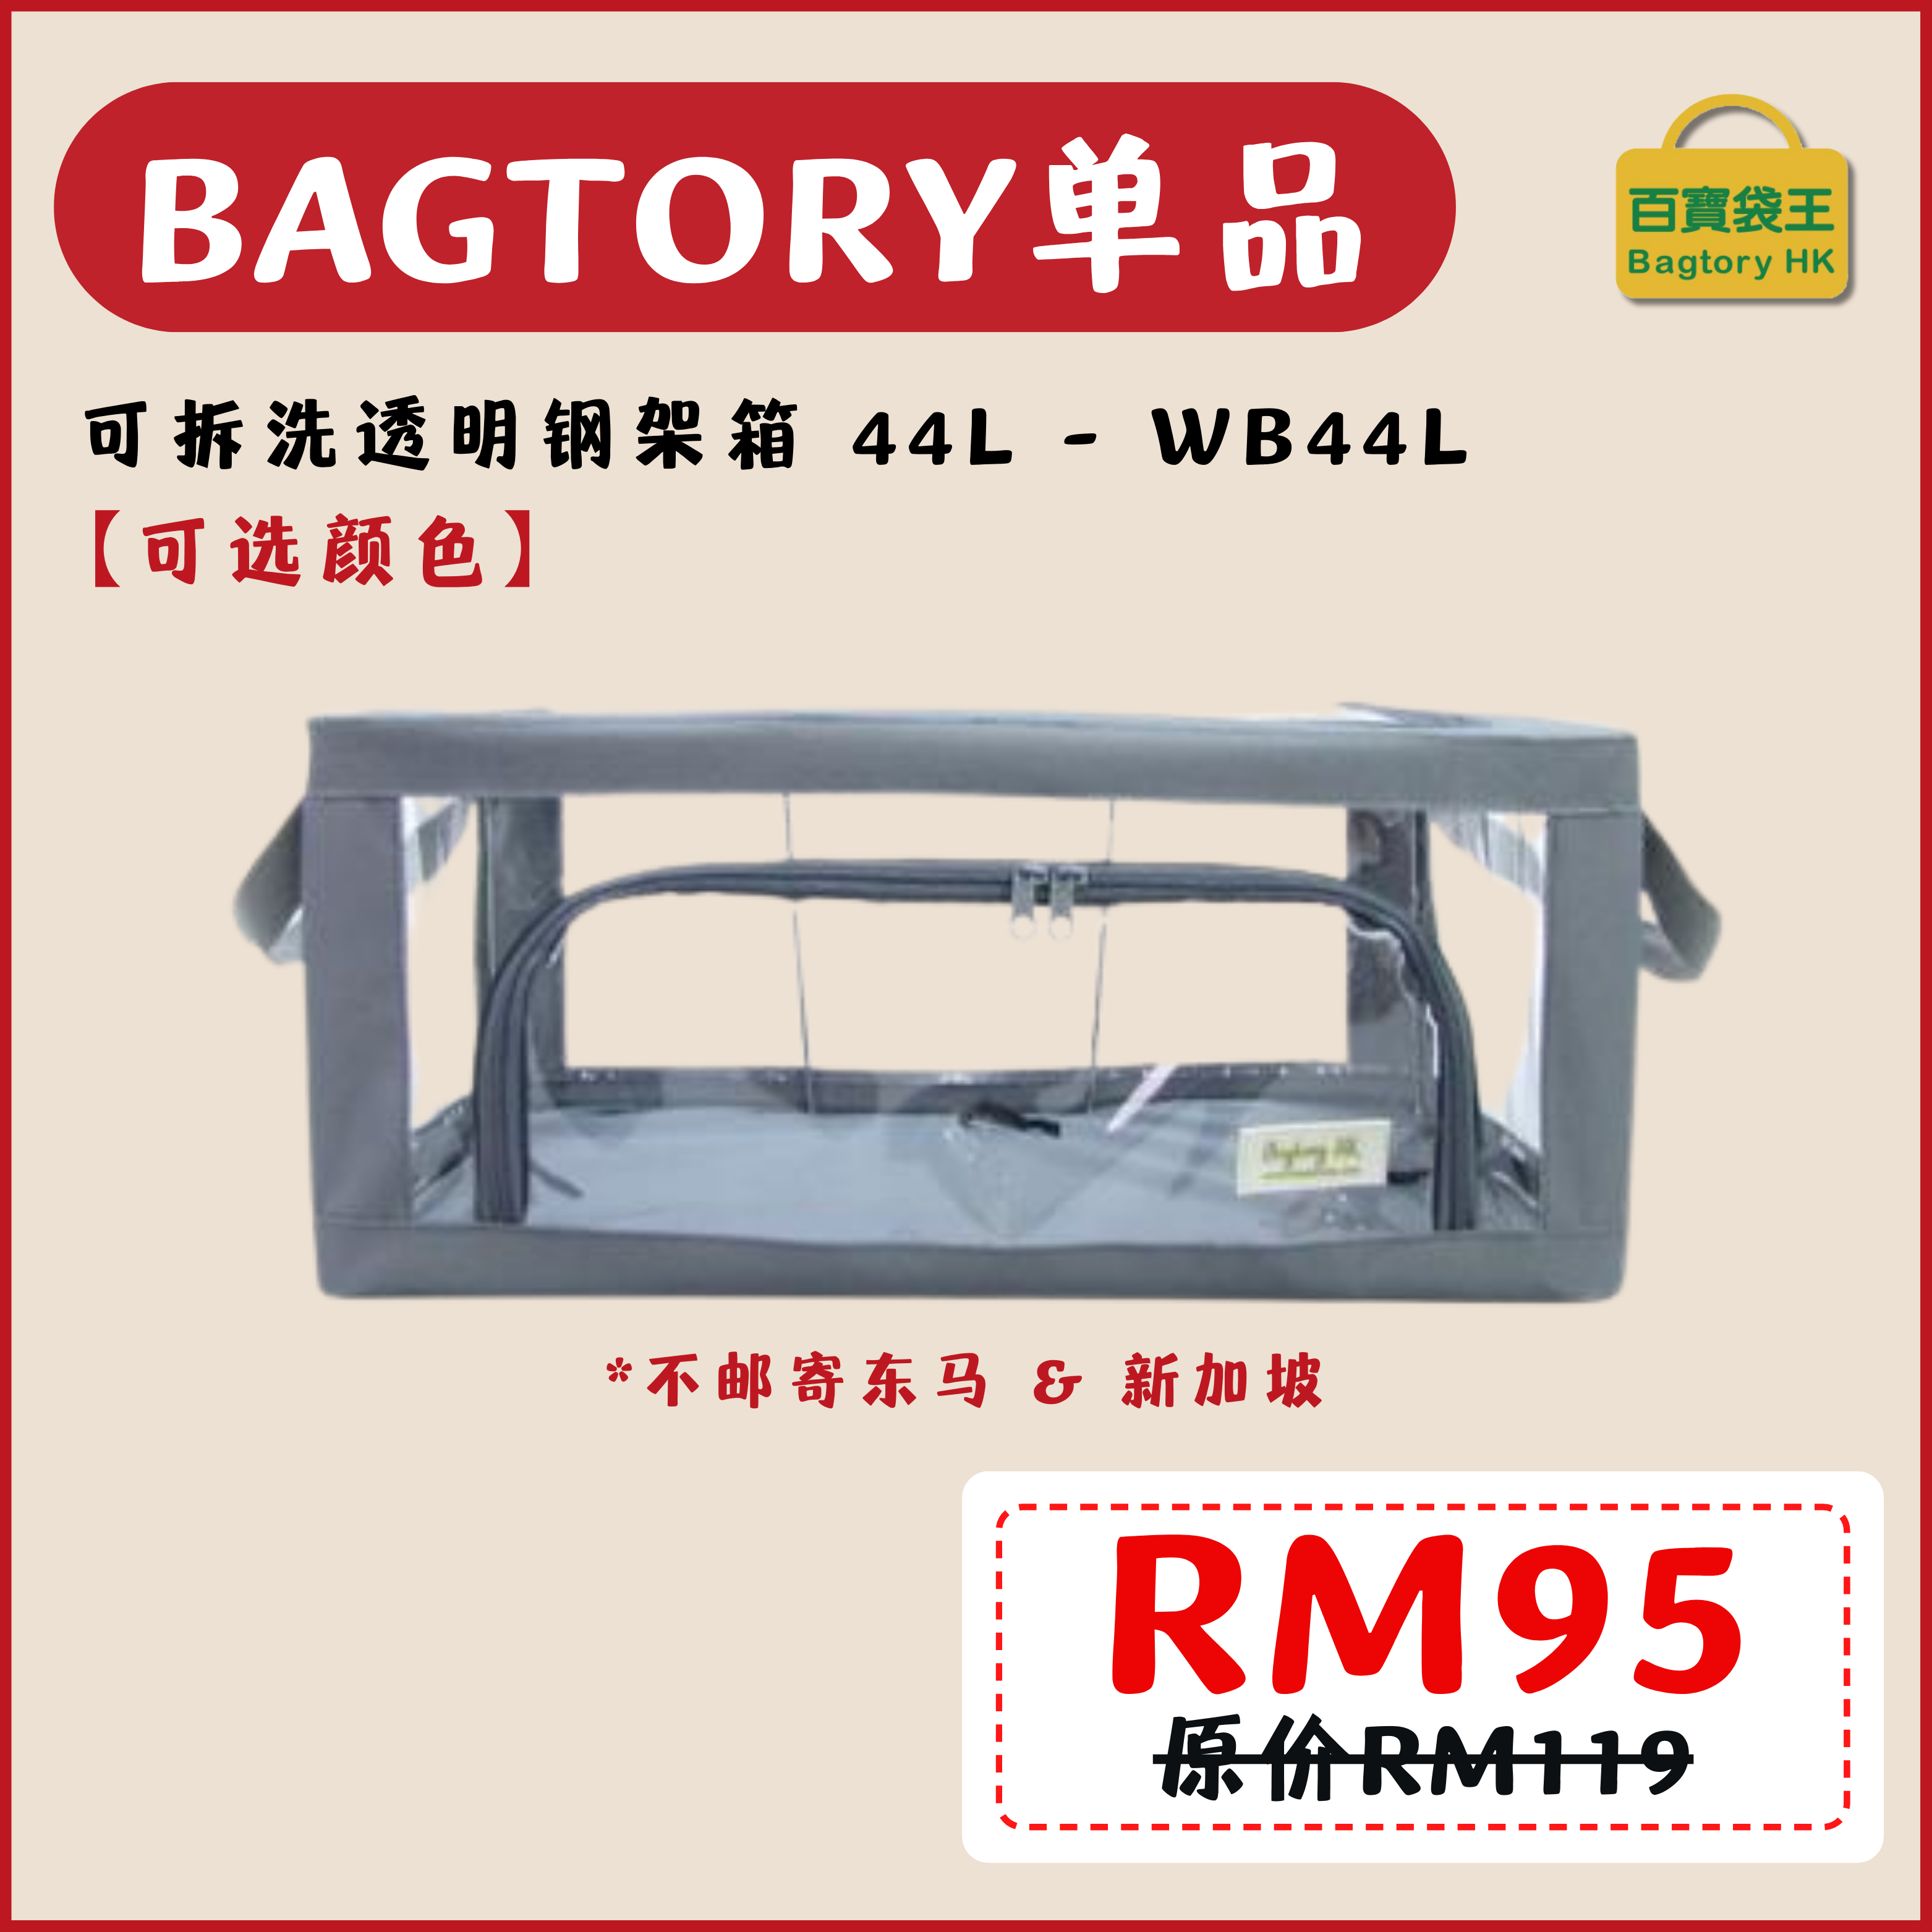 2702【不邮寄东马和新加坡地区】BAGTORY WB44L 可拆洗透明钢架箱 44L (1入)